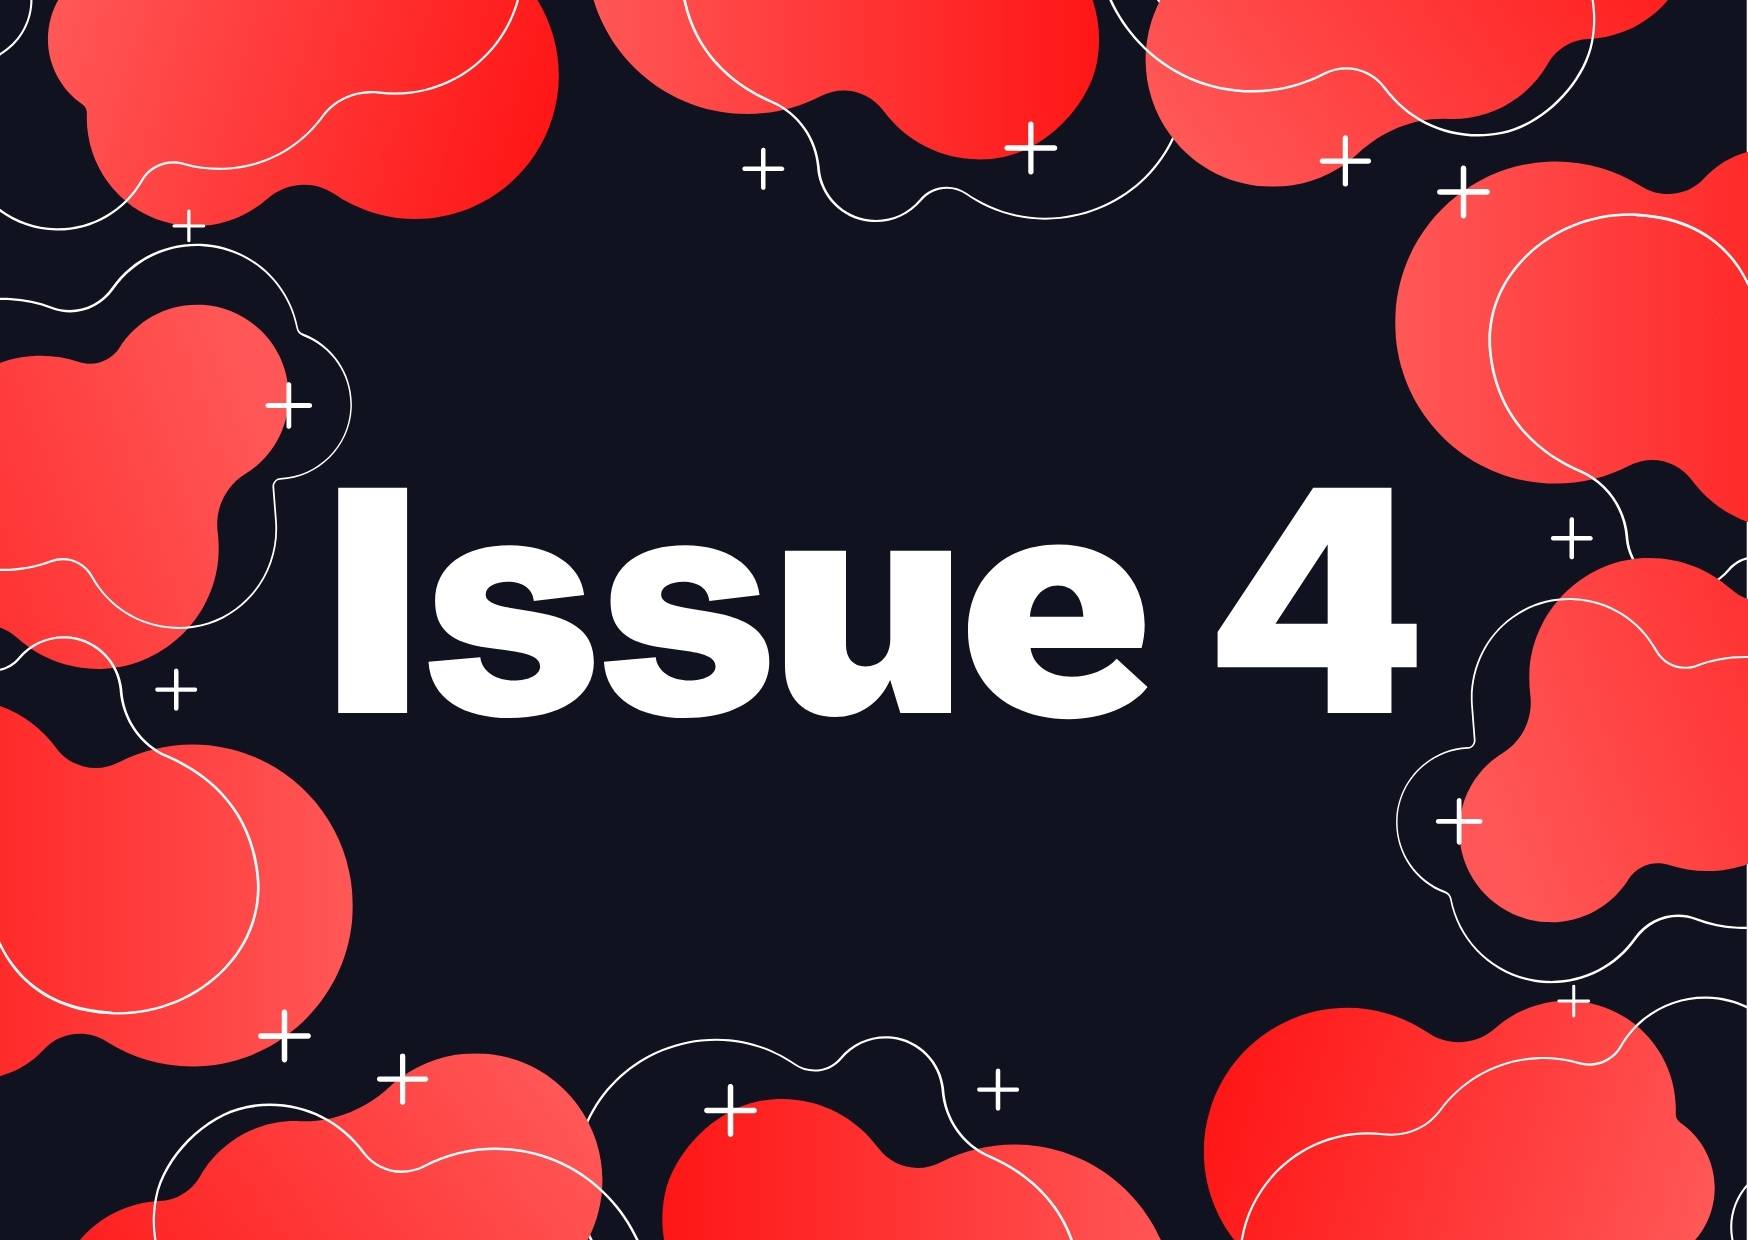 Volume 1: ISSUE 4